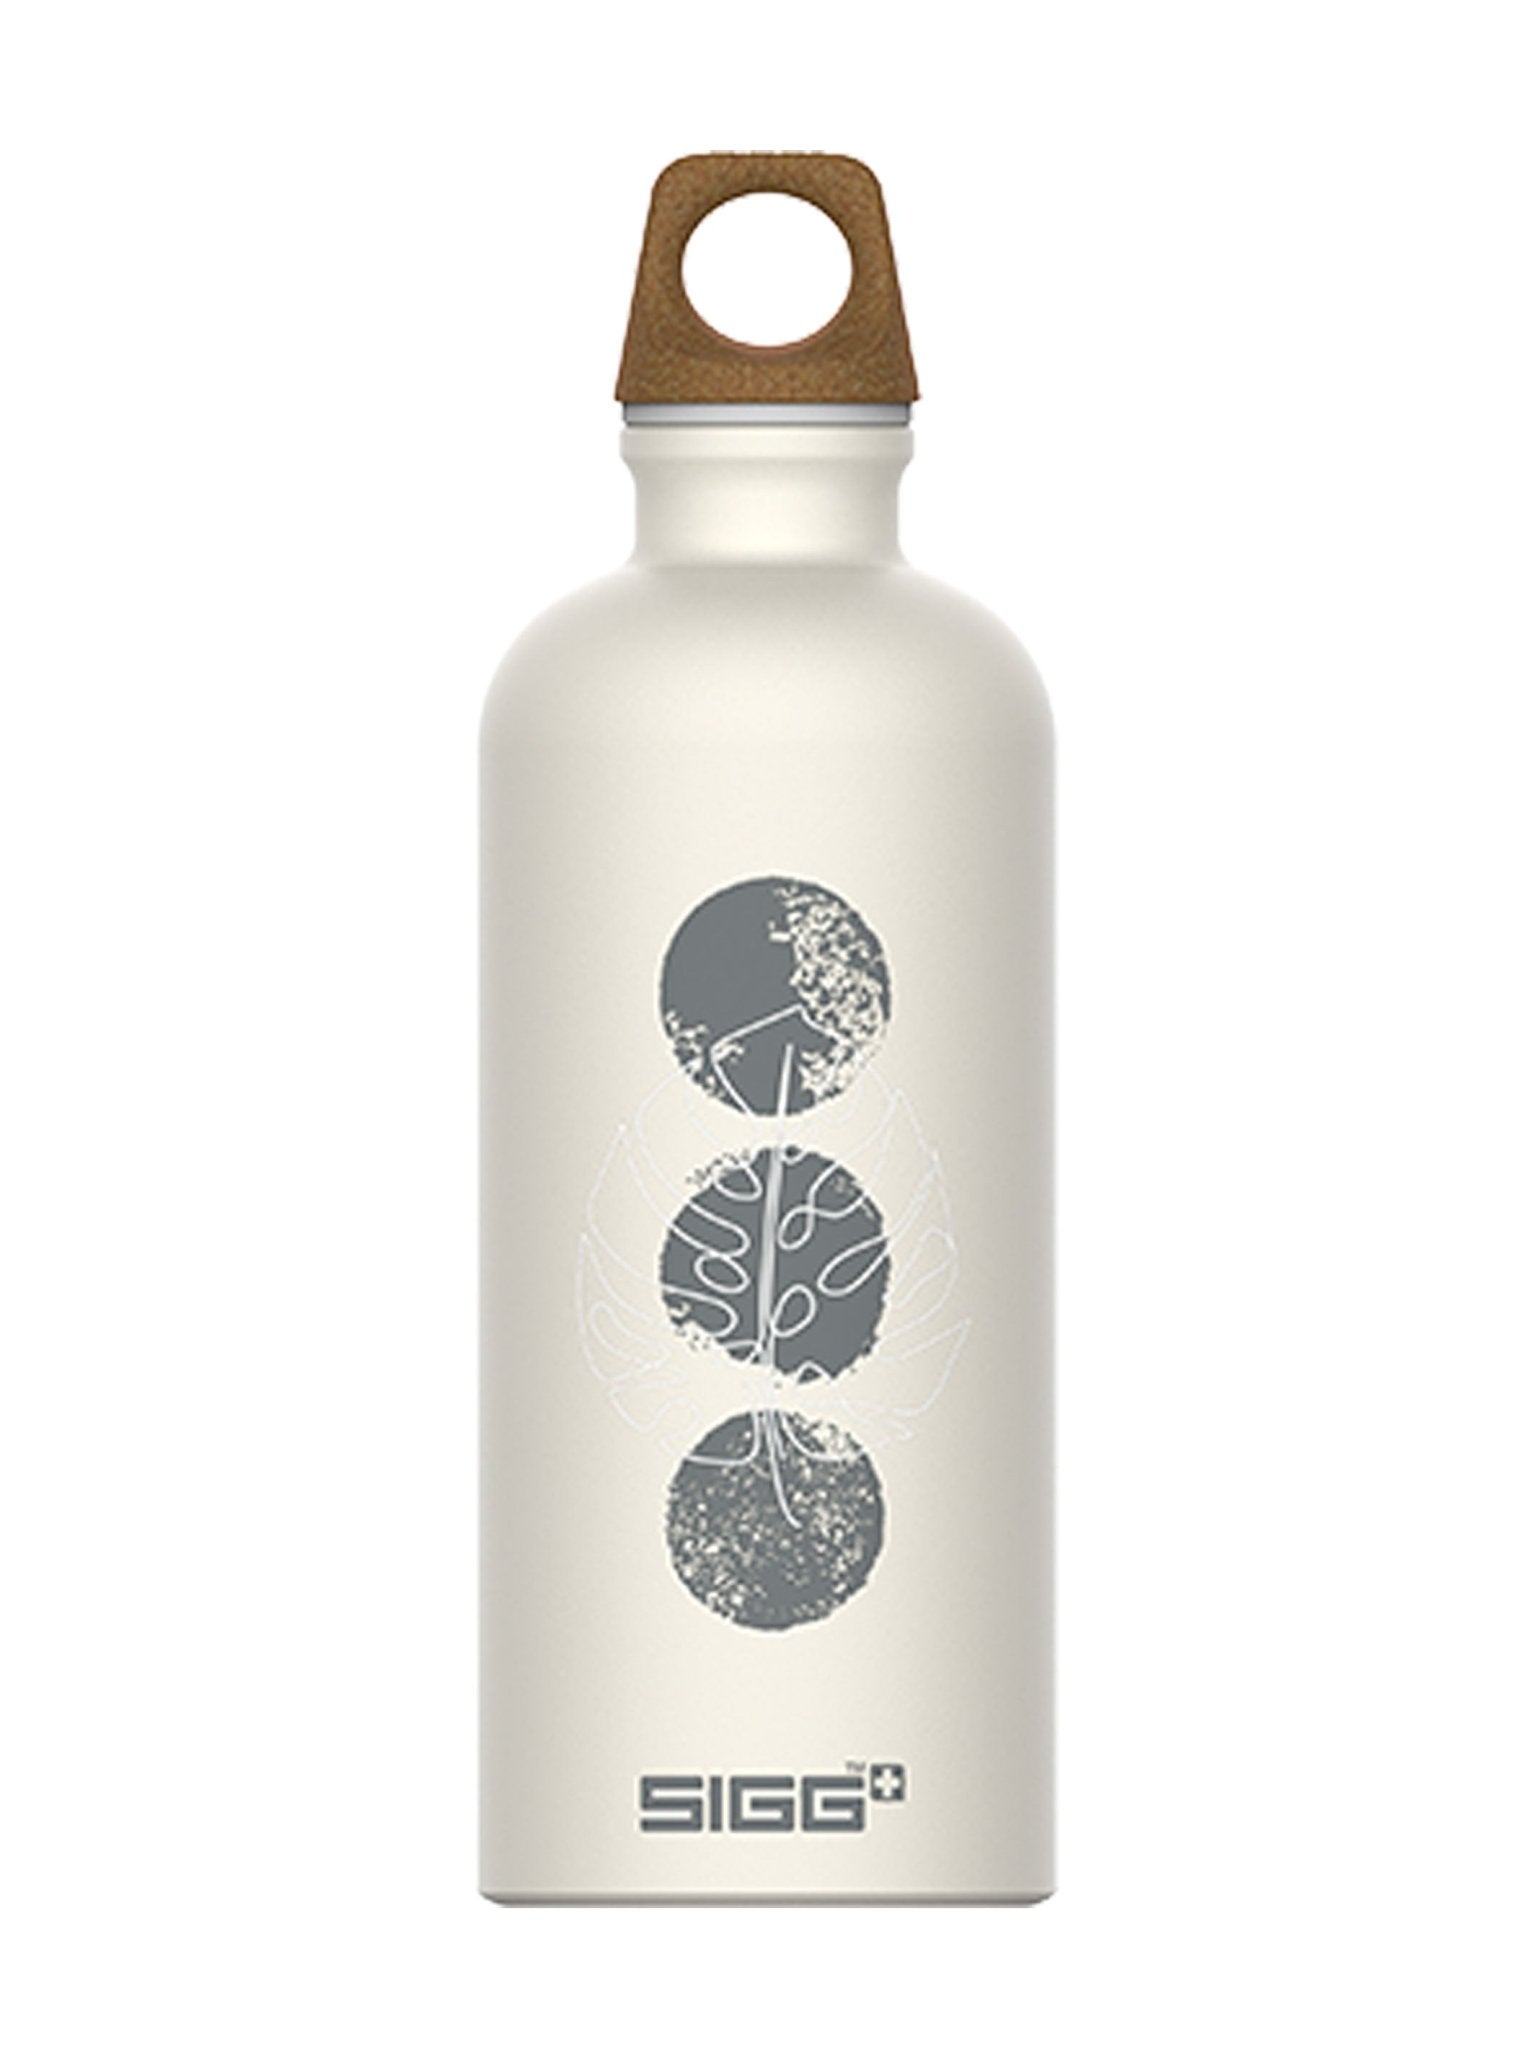 4elementsclothingSiggSIGG - Water Bottle Traveller MyPlanet Journey 0.6 Litre - BPA freeWater Bottles6002.20